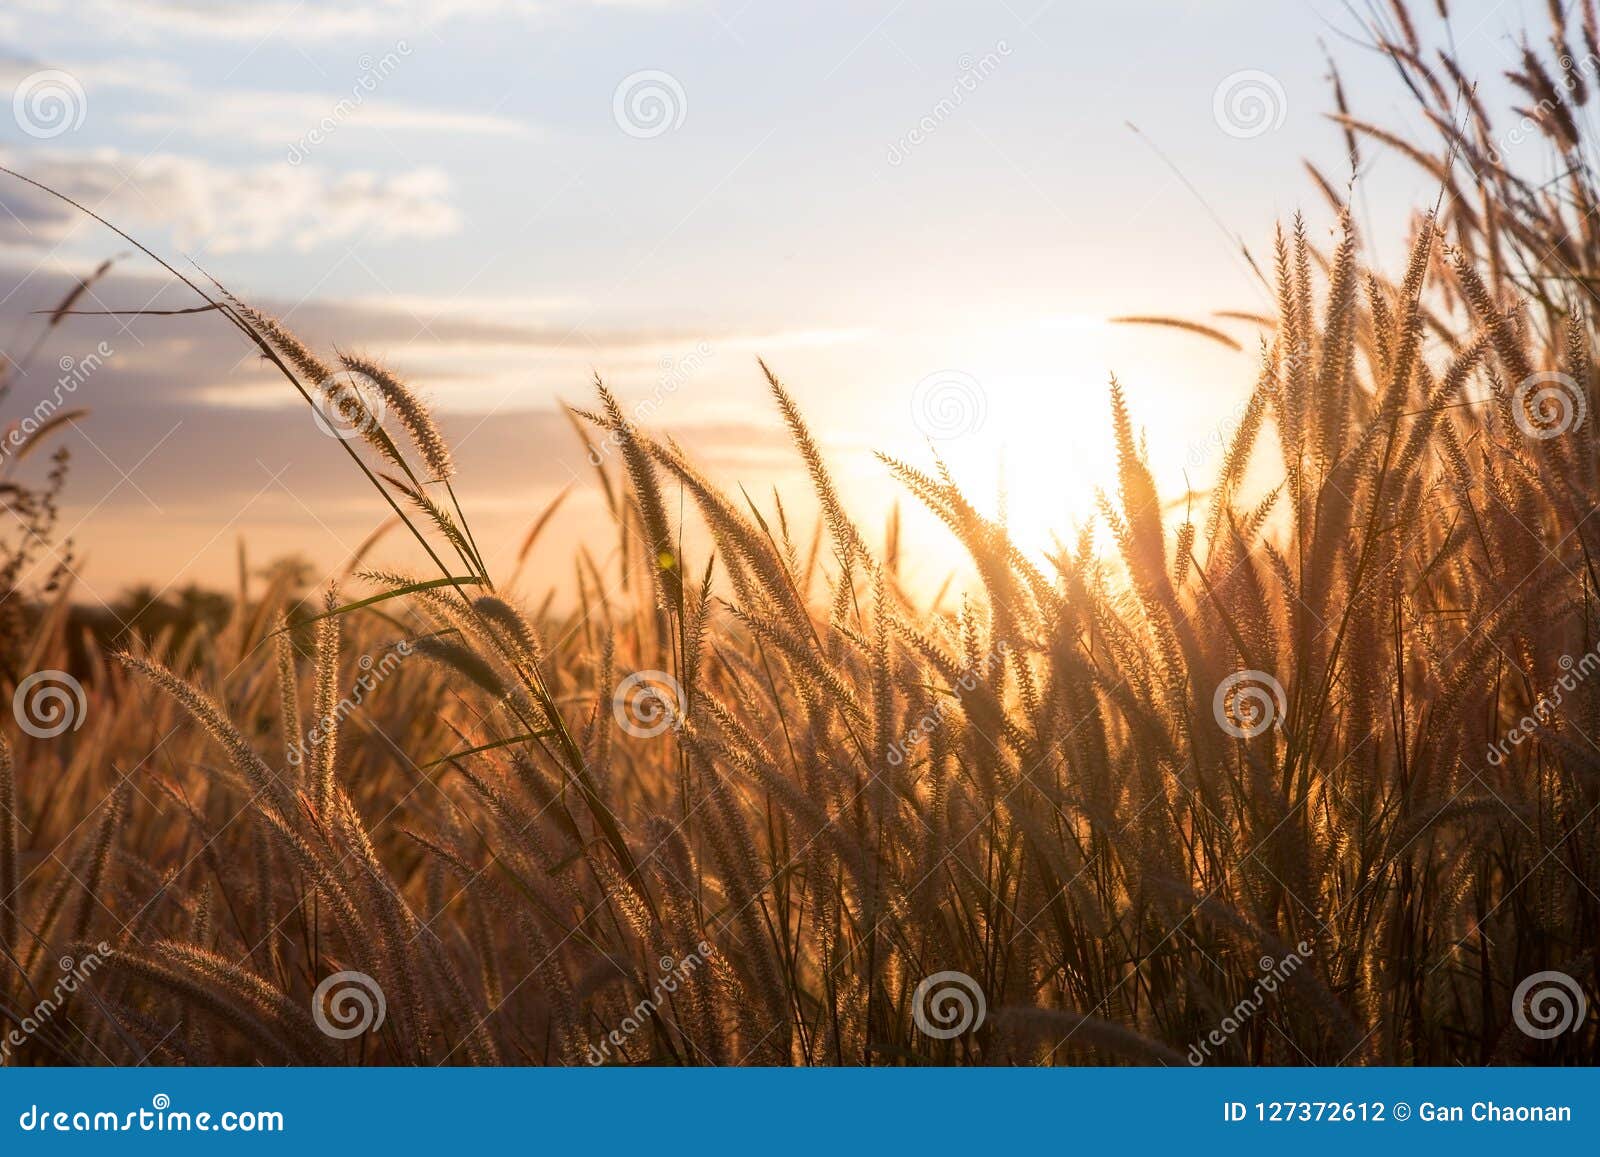 Golden Grass, Sunset Background. Stock Photo - Image of morning, orange